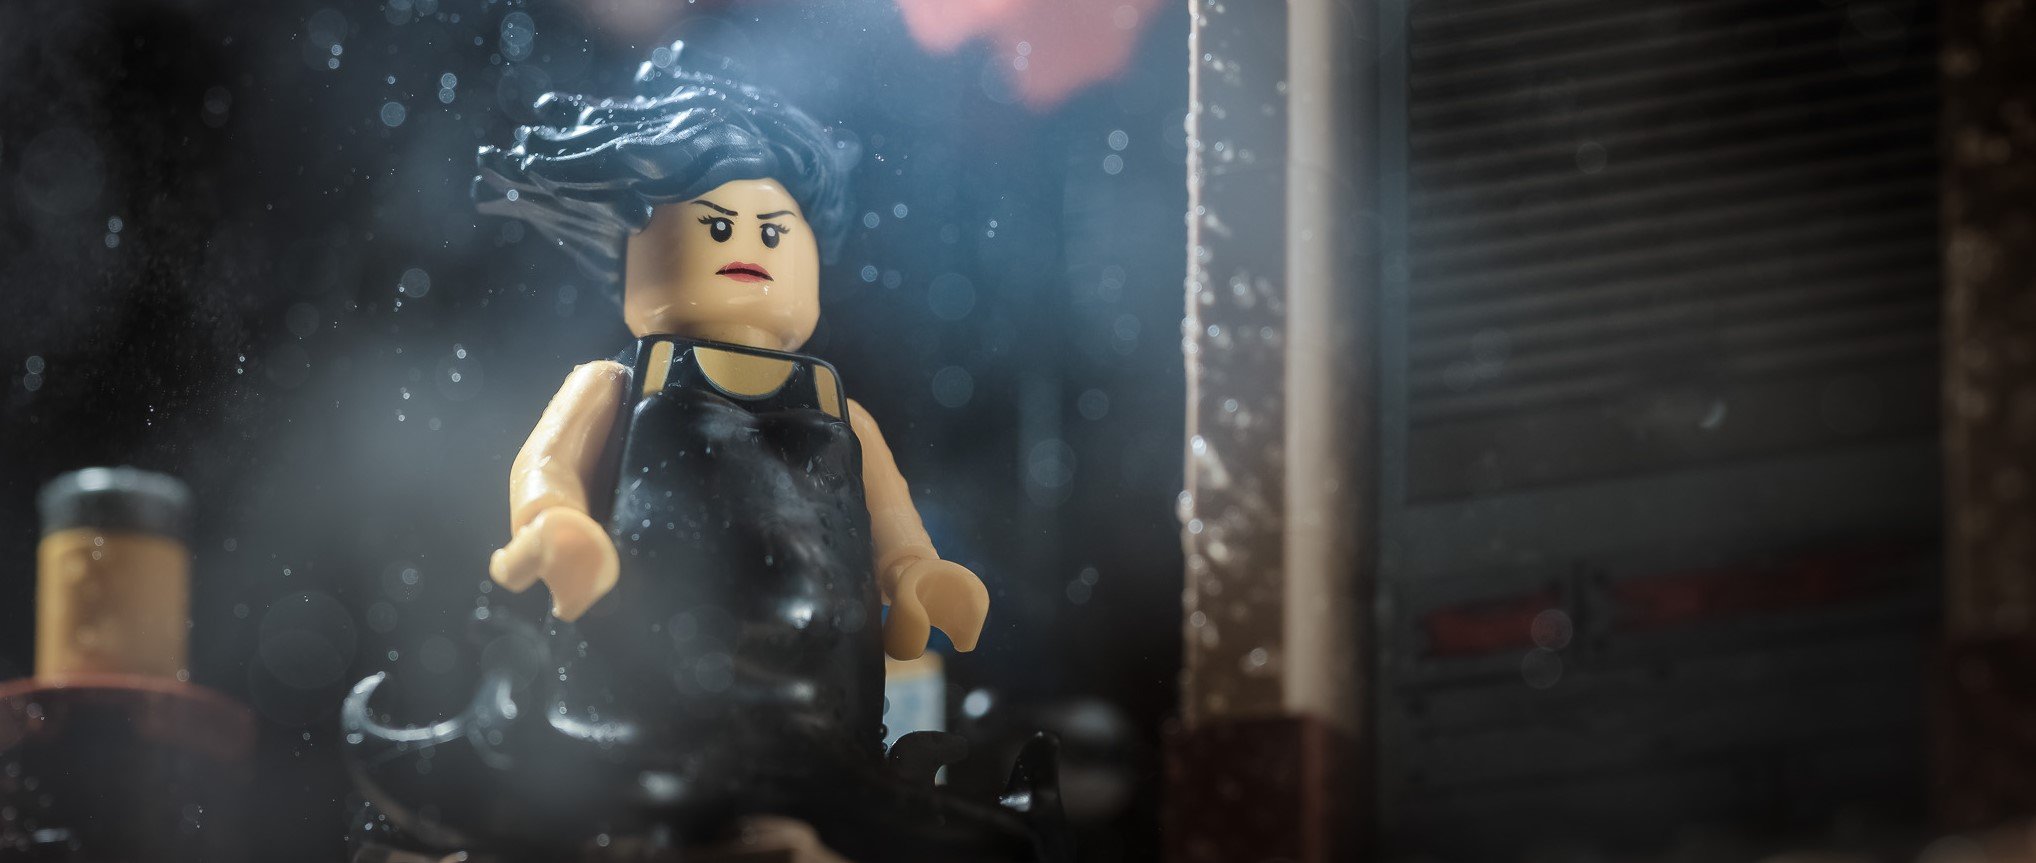 Lego Ursula - Strength Training for Women (7 )